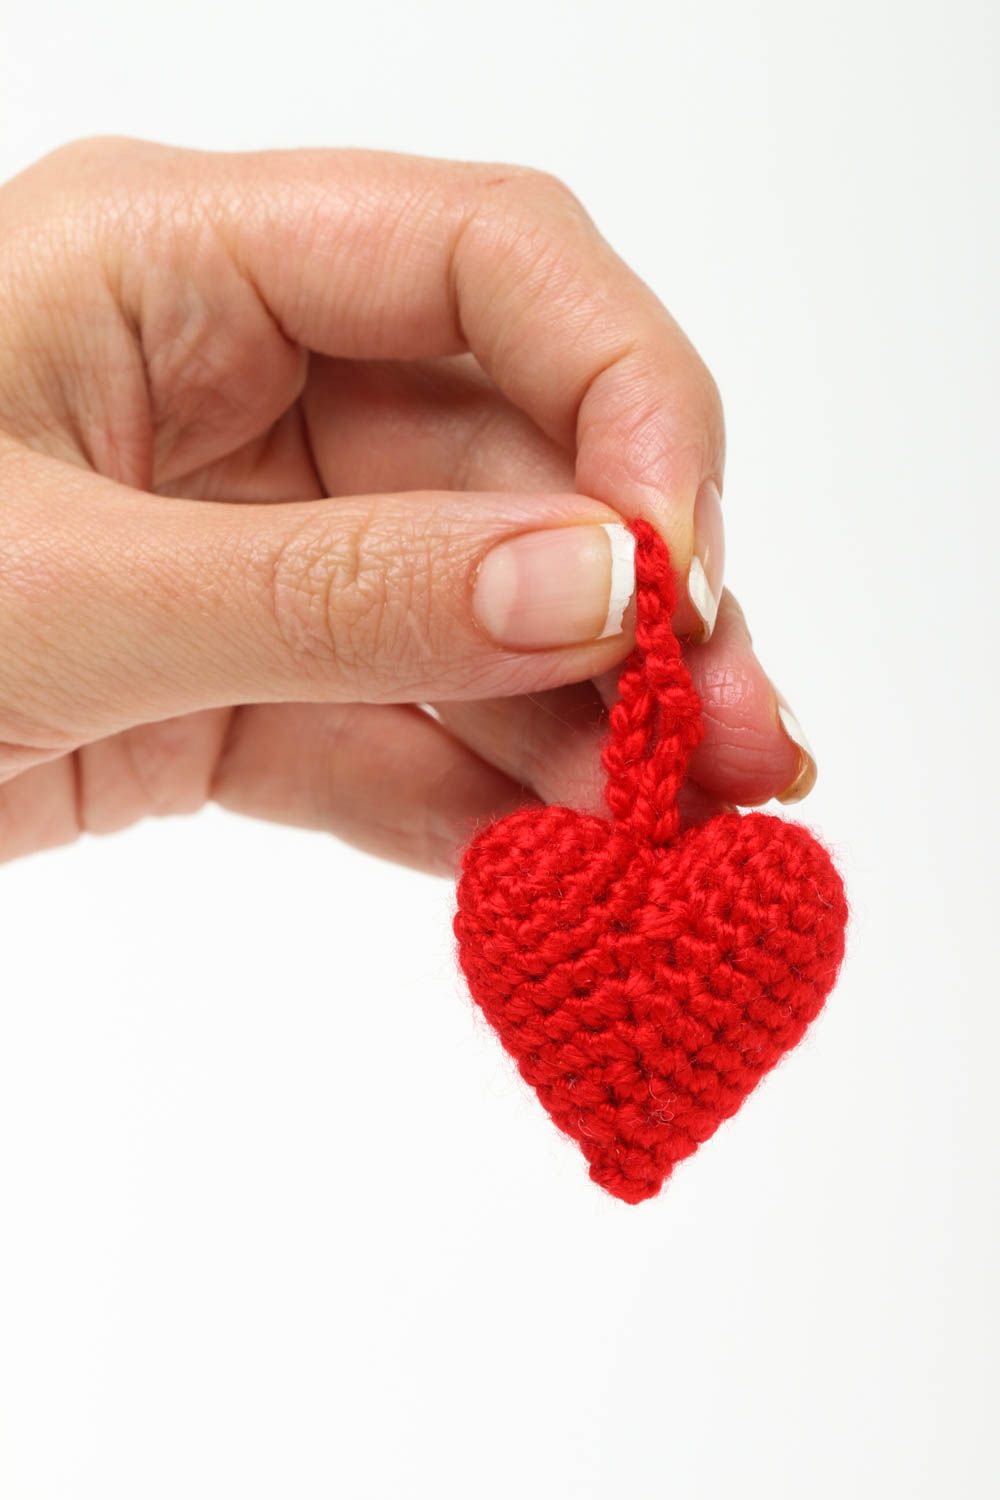 Детская игрушка мягкое сердце ручной работы мягкая игрушка маленькая красная фото 5